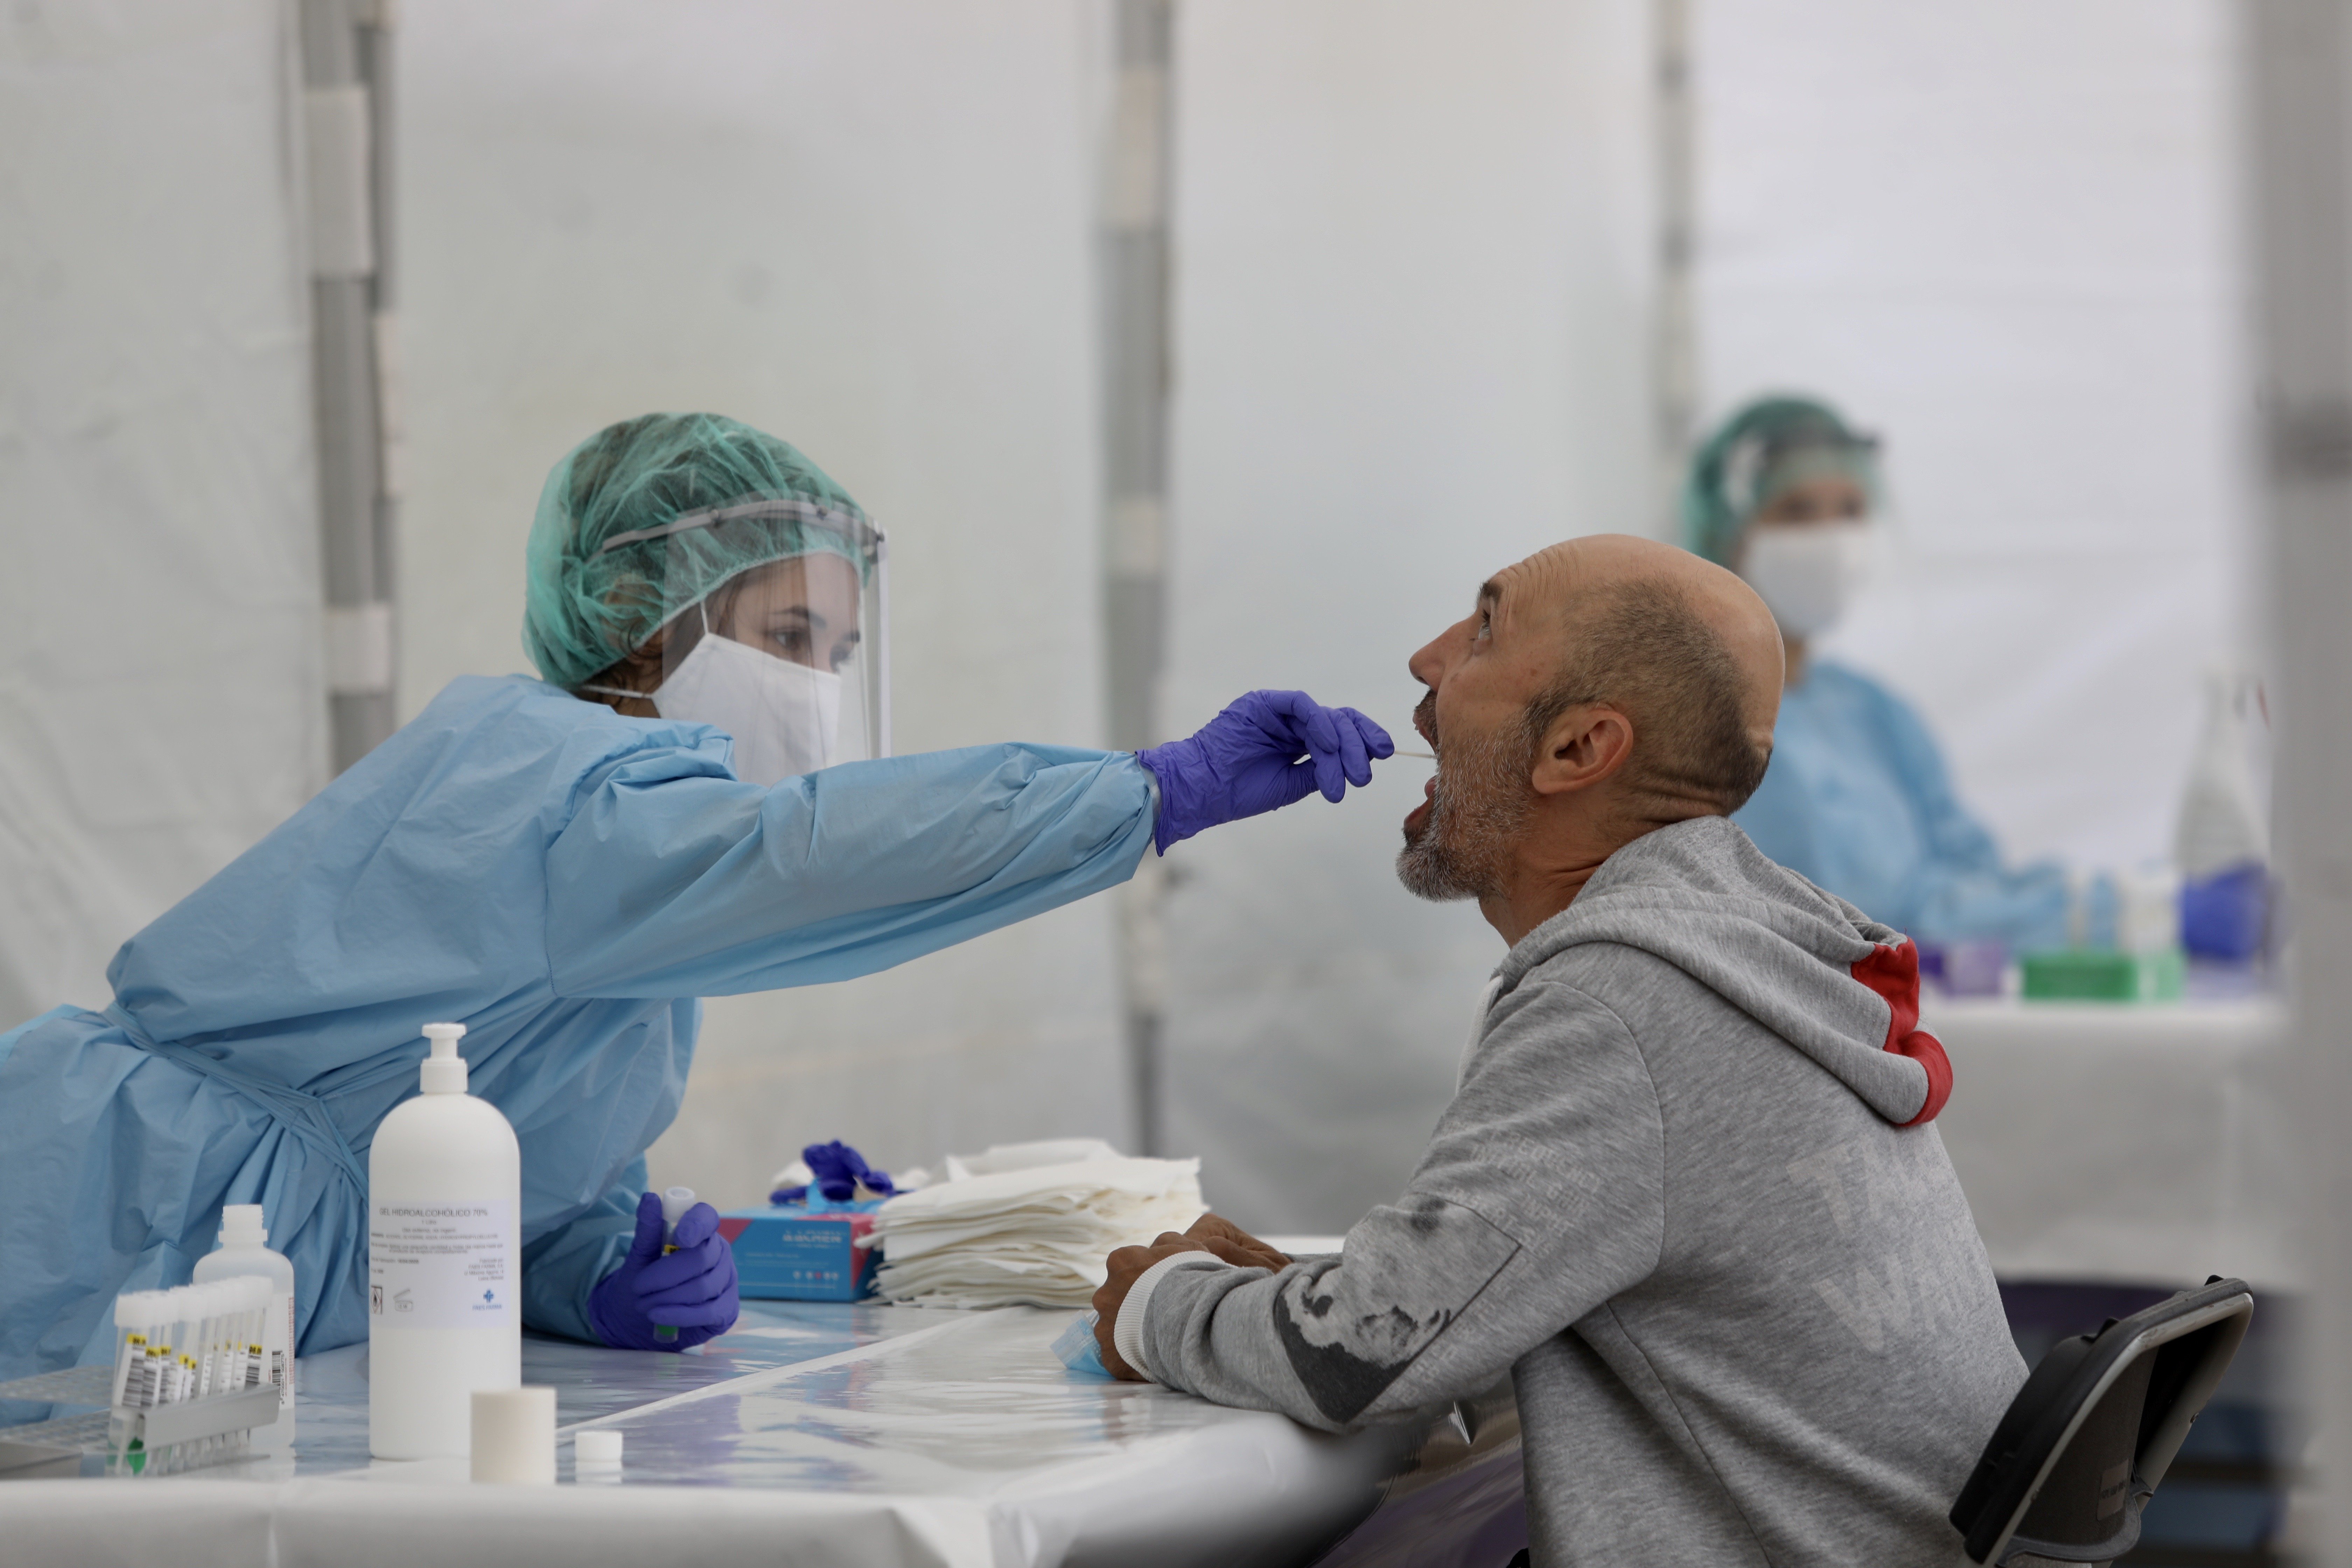 Continúa el aumento de nuevos casos de coronavirus en España: 127 más que ayer